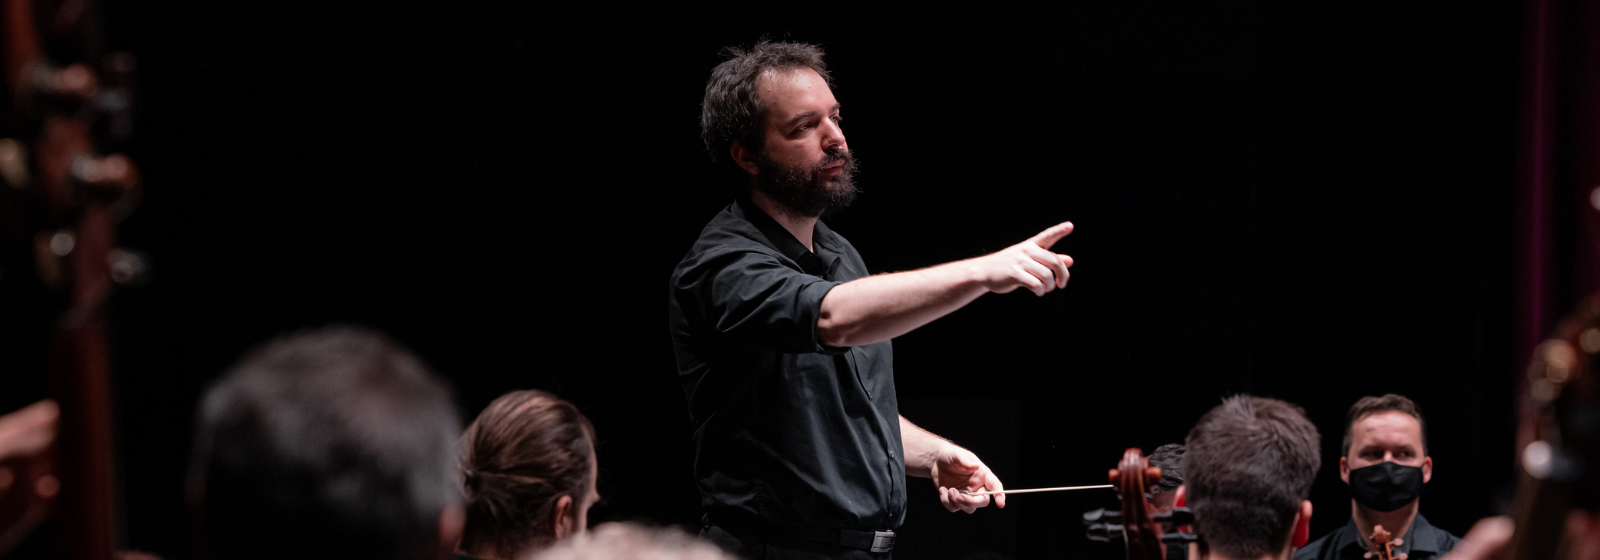 ZENEMÁNIA – A Nemzeti Filharmonikus Zenekar beavató koncertsorozata